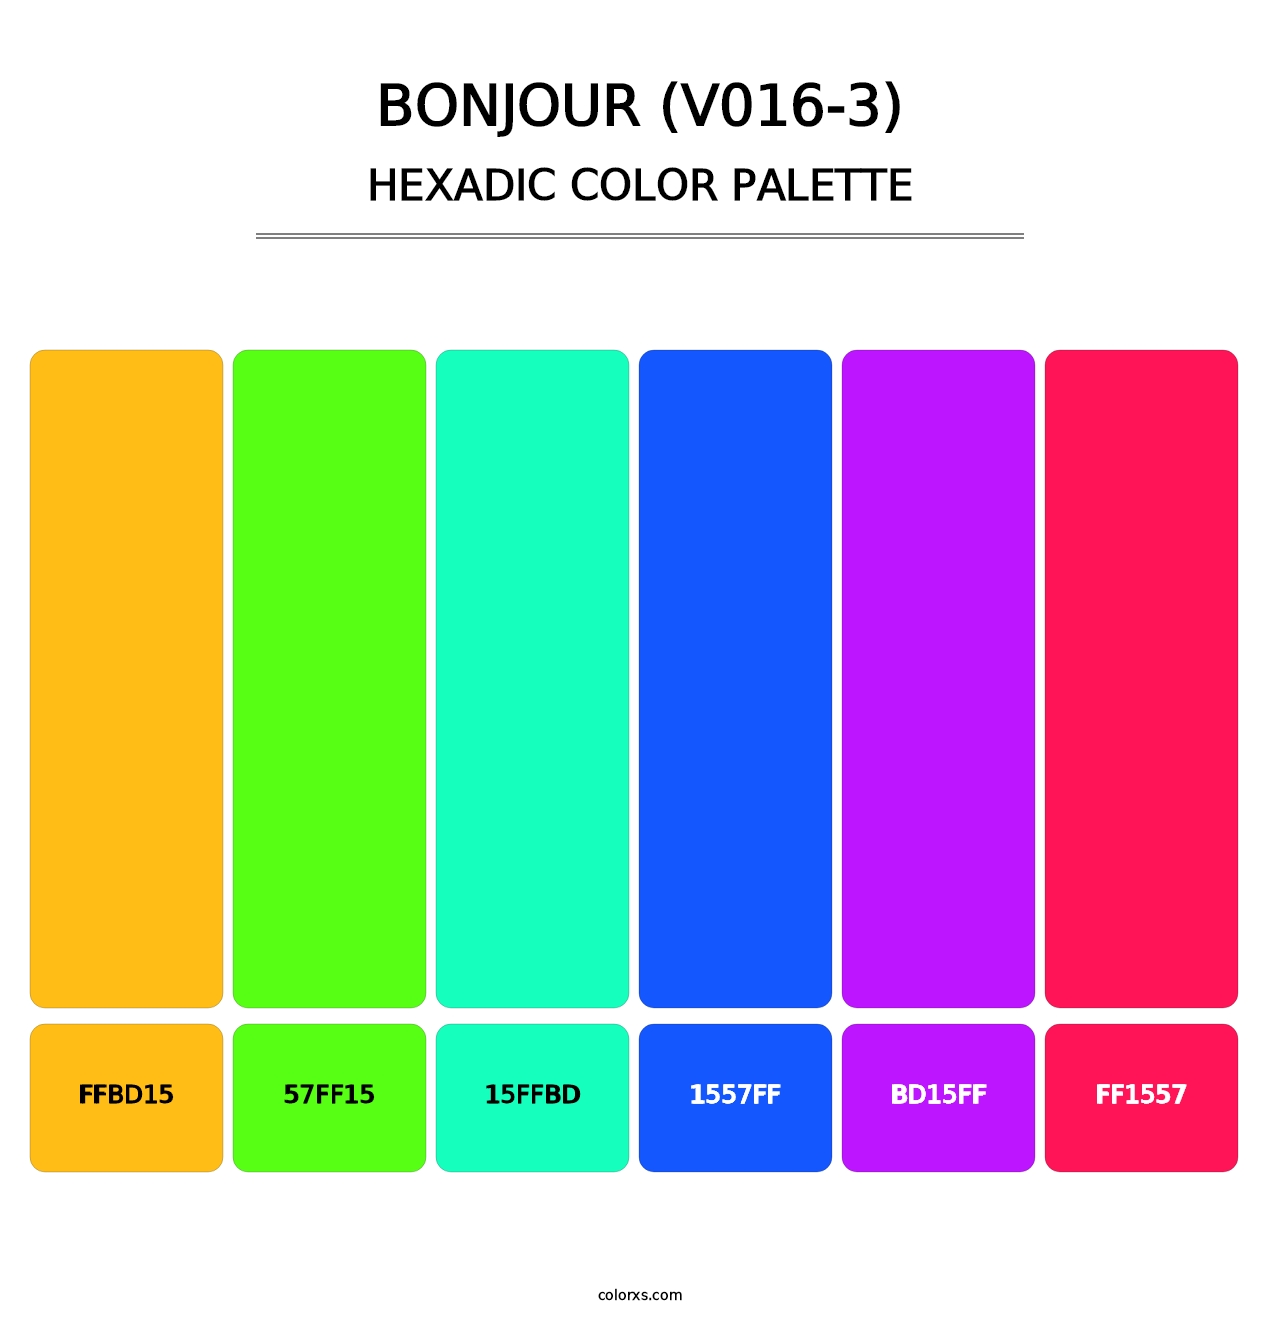 Bonjour (V016-3) - Hexadic Color Palette